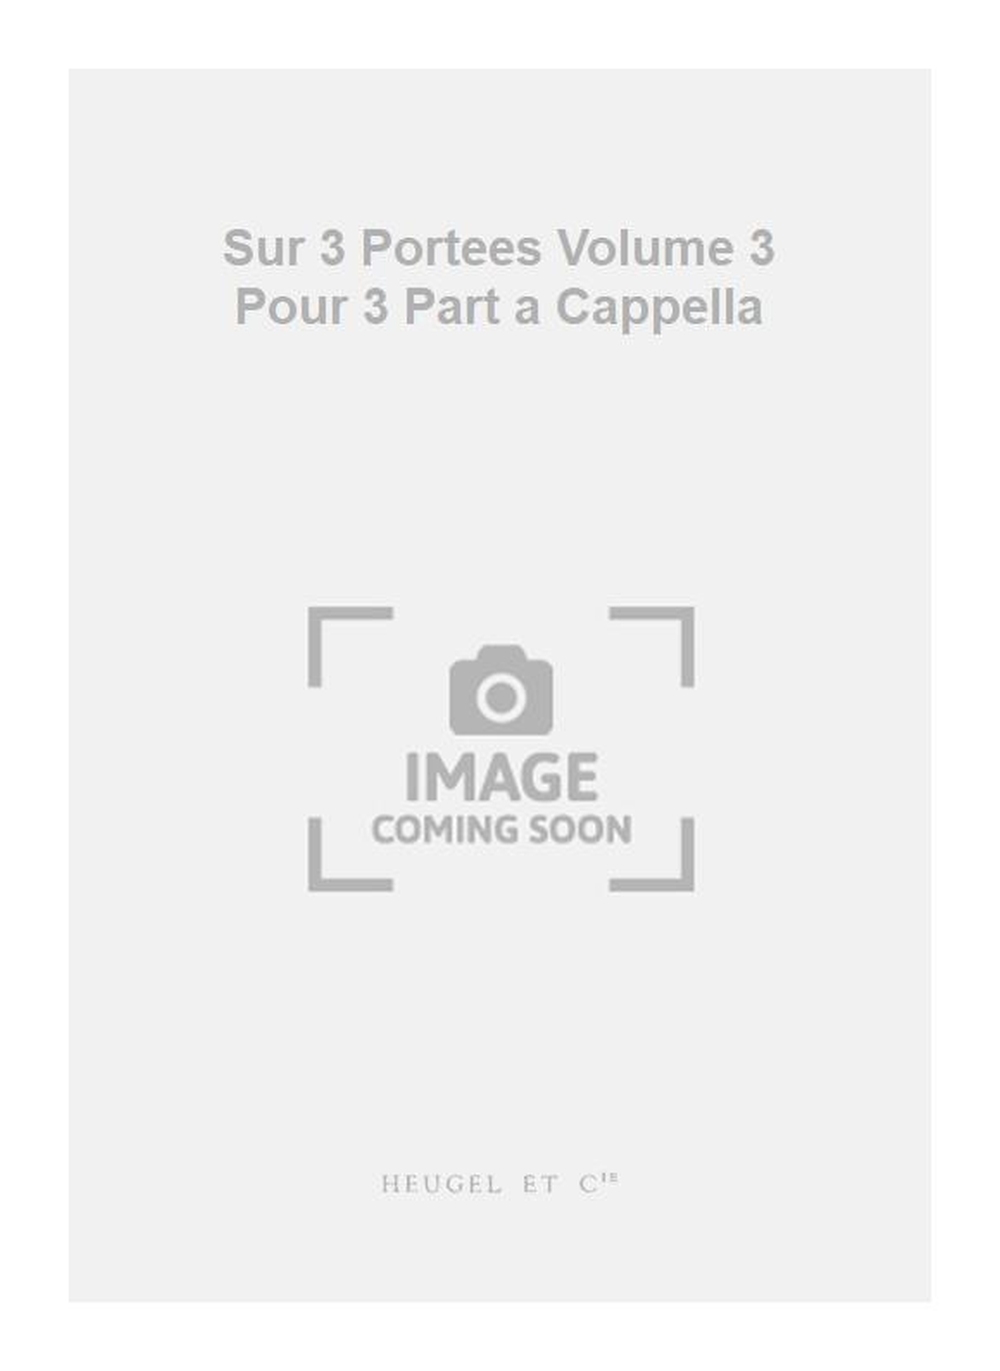 Georges Aubanel: Sur 3 Portees Volume 3 Pour 3 Part a Cappella